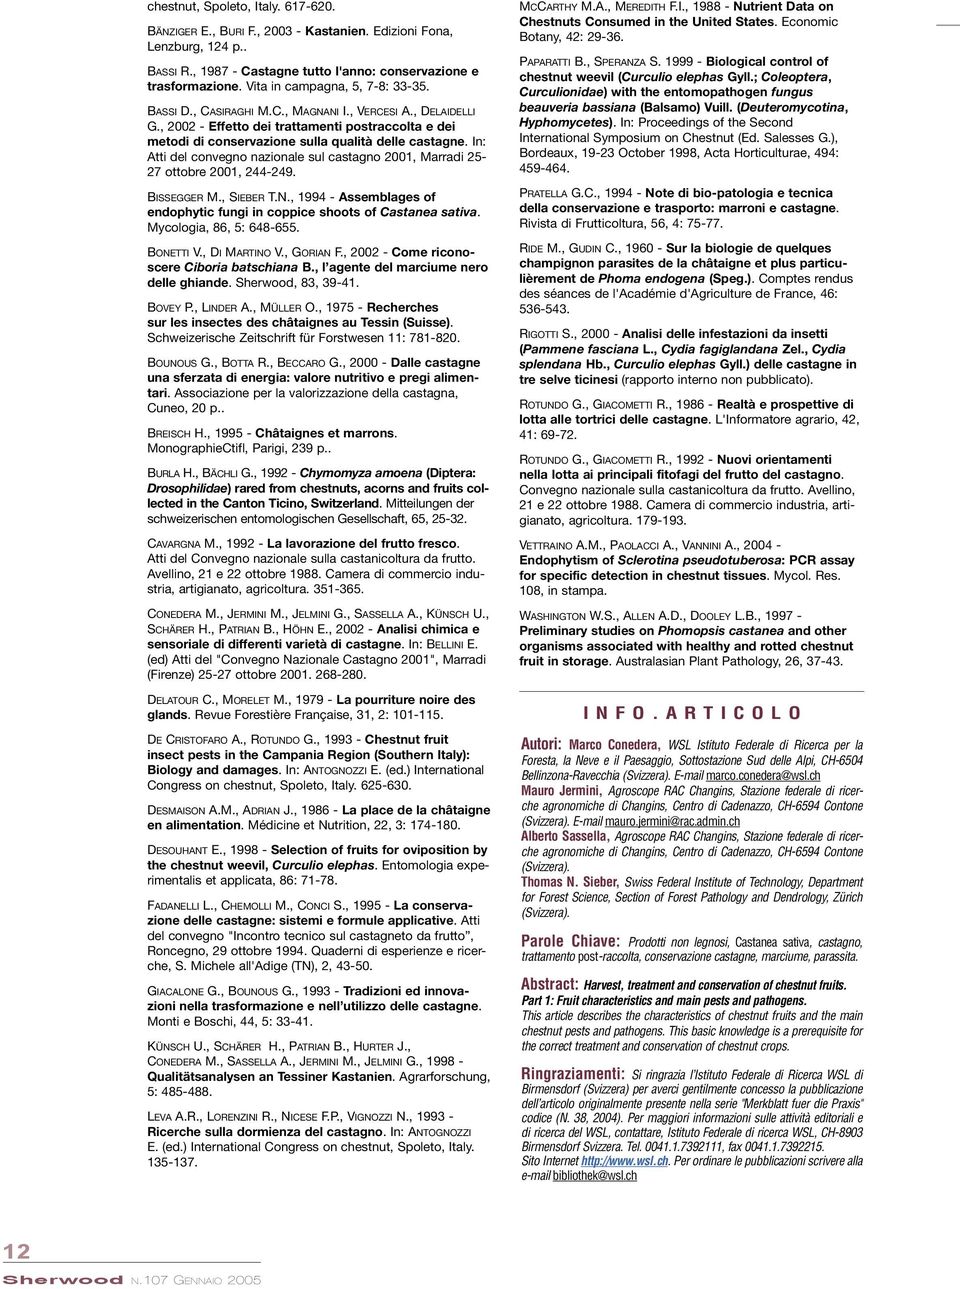 , 2002 - Effetto dei trattamenti postraccolta e dei metodi di conservazione sulla qualità delle castagne. In: Atti del convegno nazionale sul castagno 2001, Marradi 25-27 ottobre 2001, 244-249.